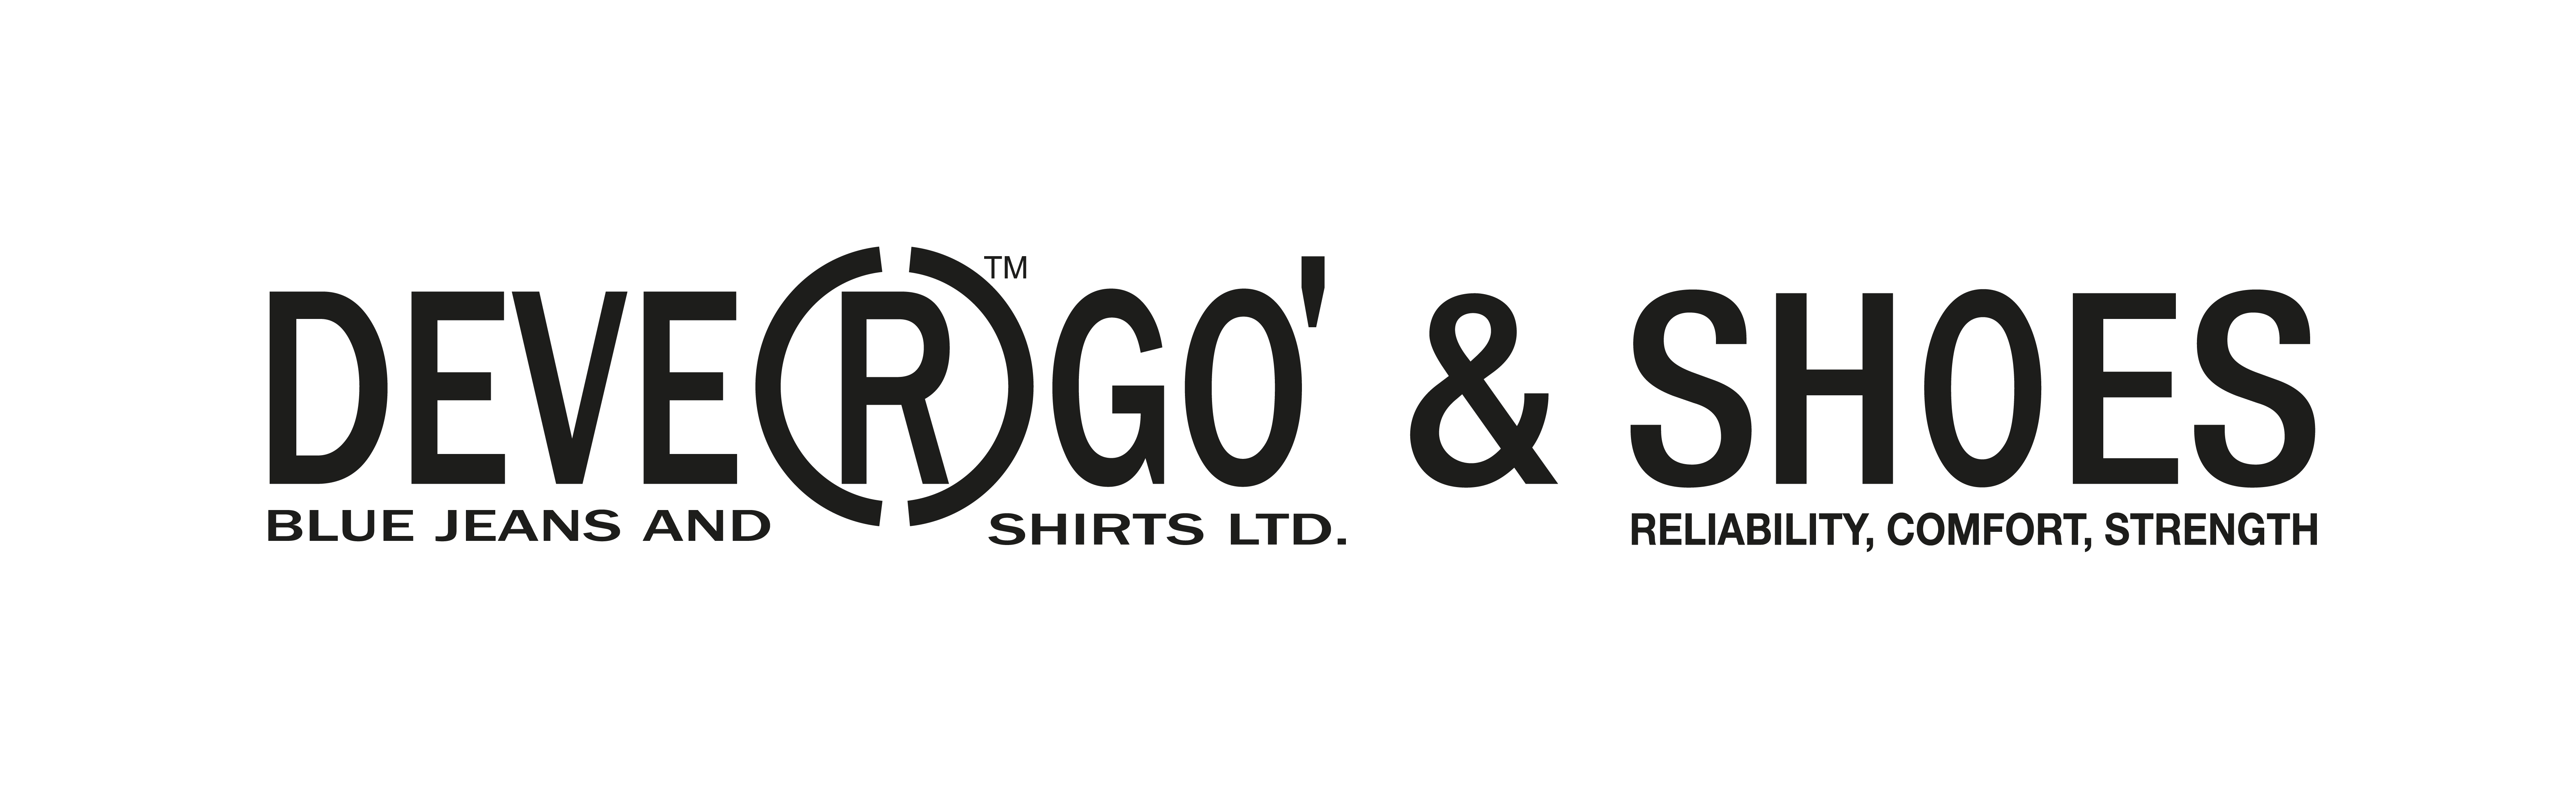 devergo-shoes-logo-2018-black.png